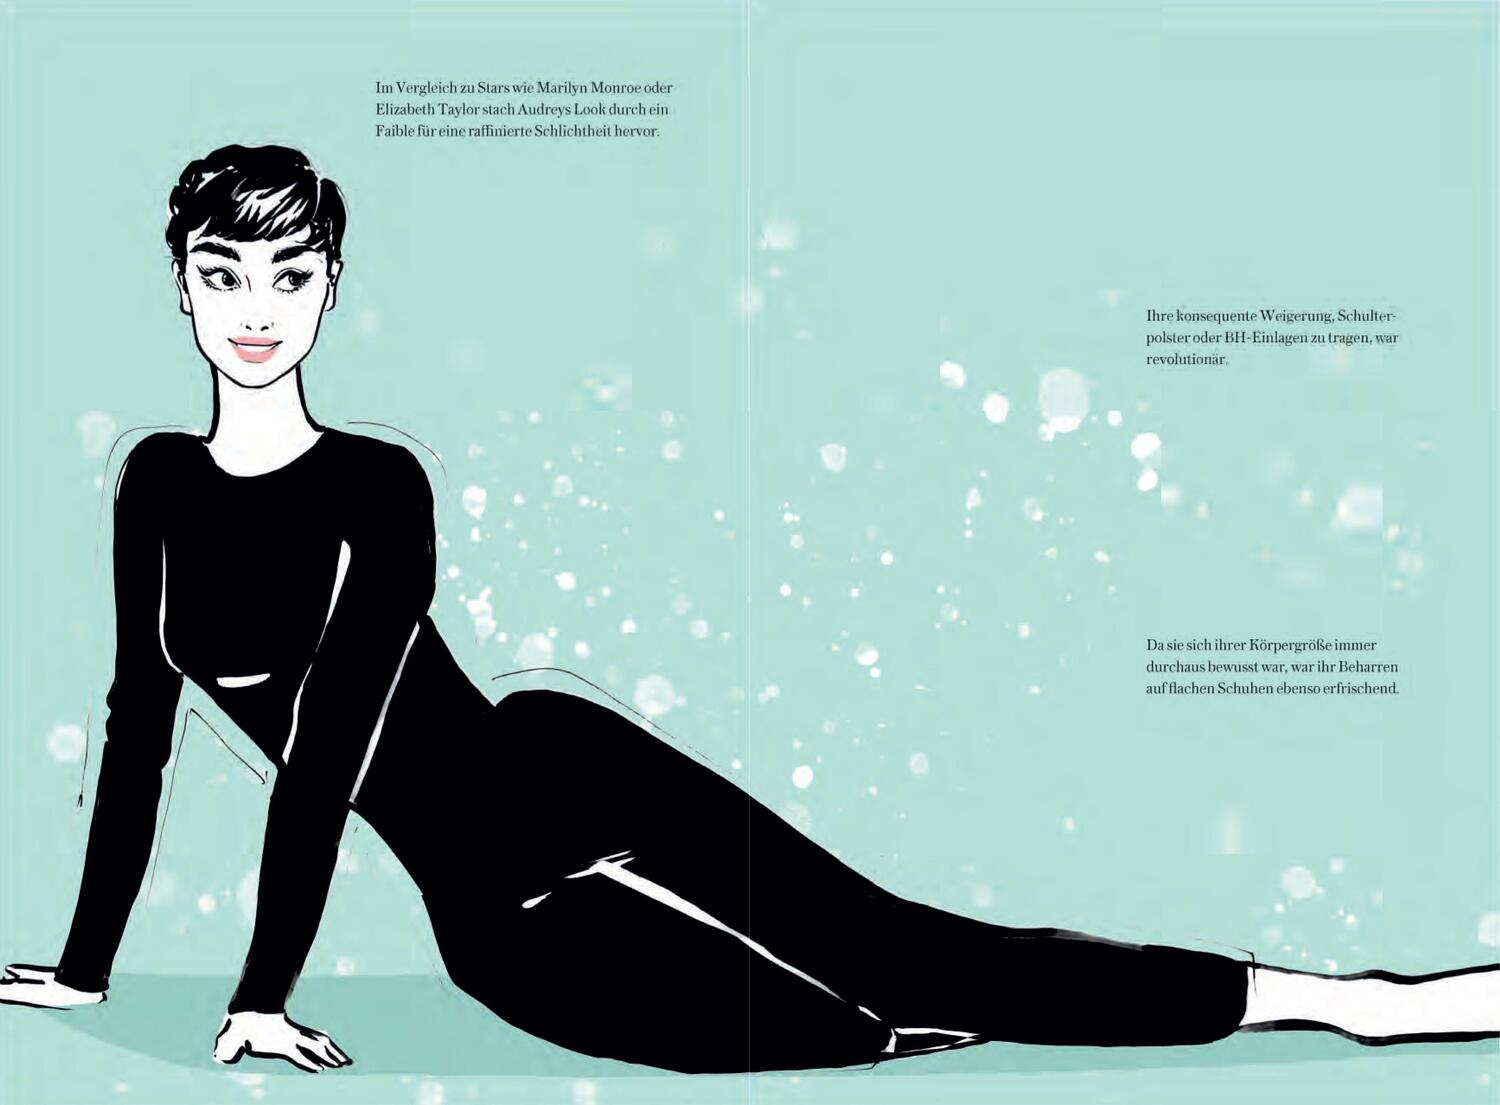 Bild: 9783791389127 | Audrey Hepburn | Die zauberhafte Welt der Stilikone | Megan Hess